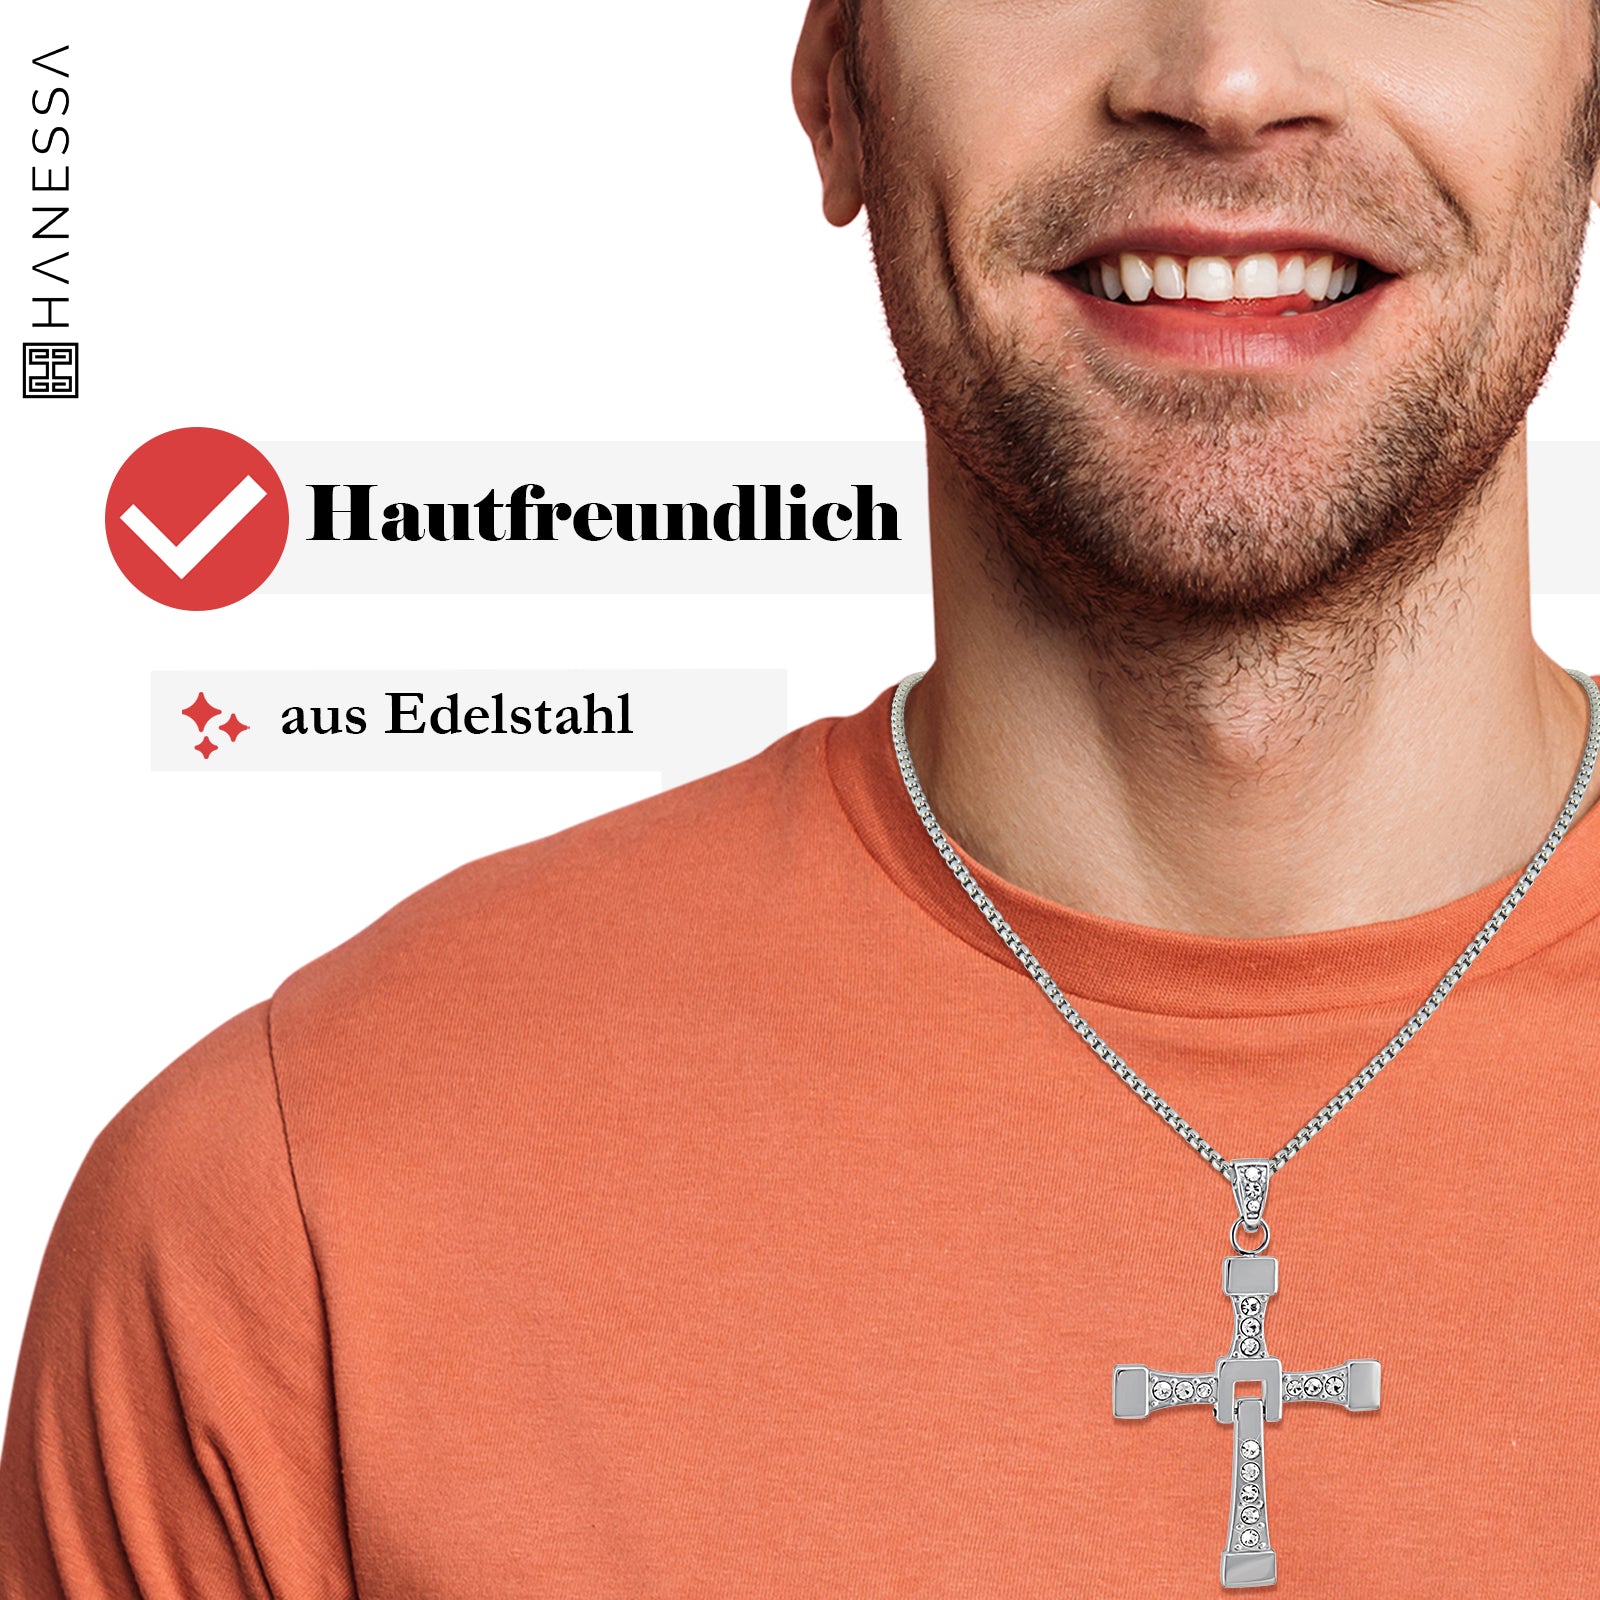 Stra mit Diesel Vin Kette Hanessa-Schmuck – Personalisierte Edelstahl und Kreuz-Anhänger